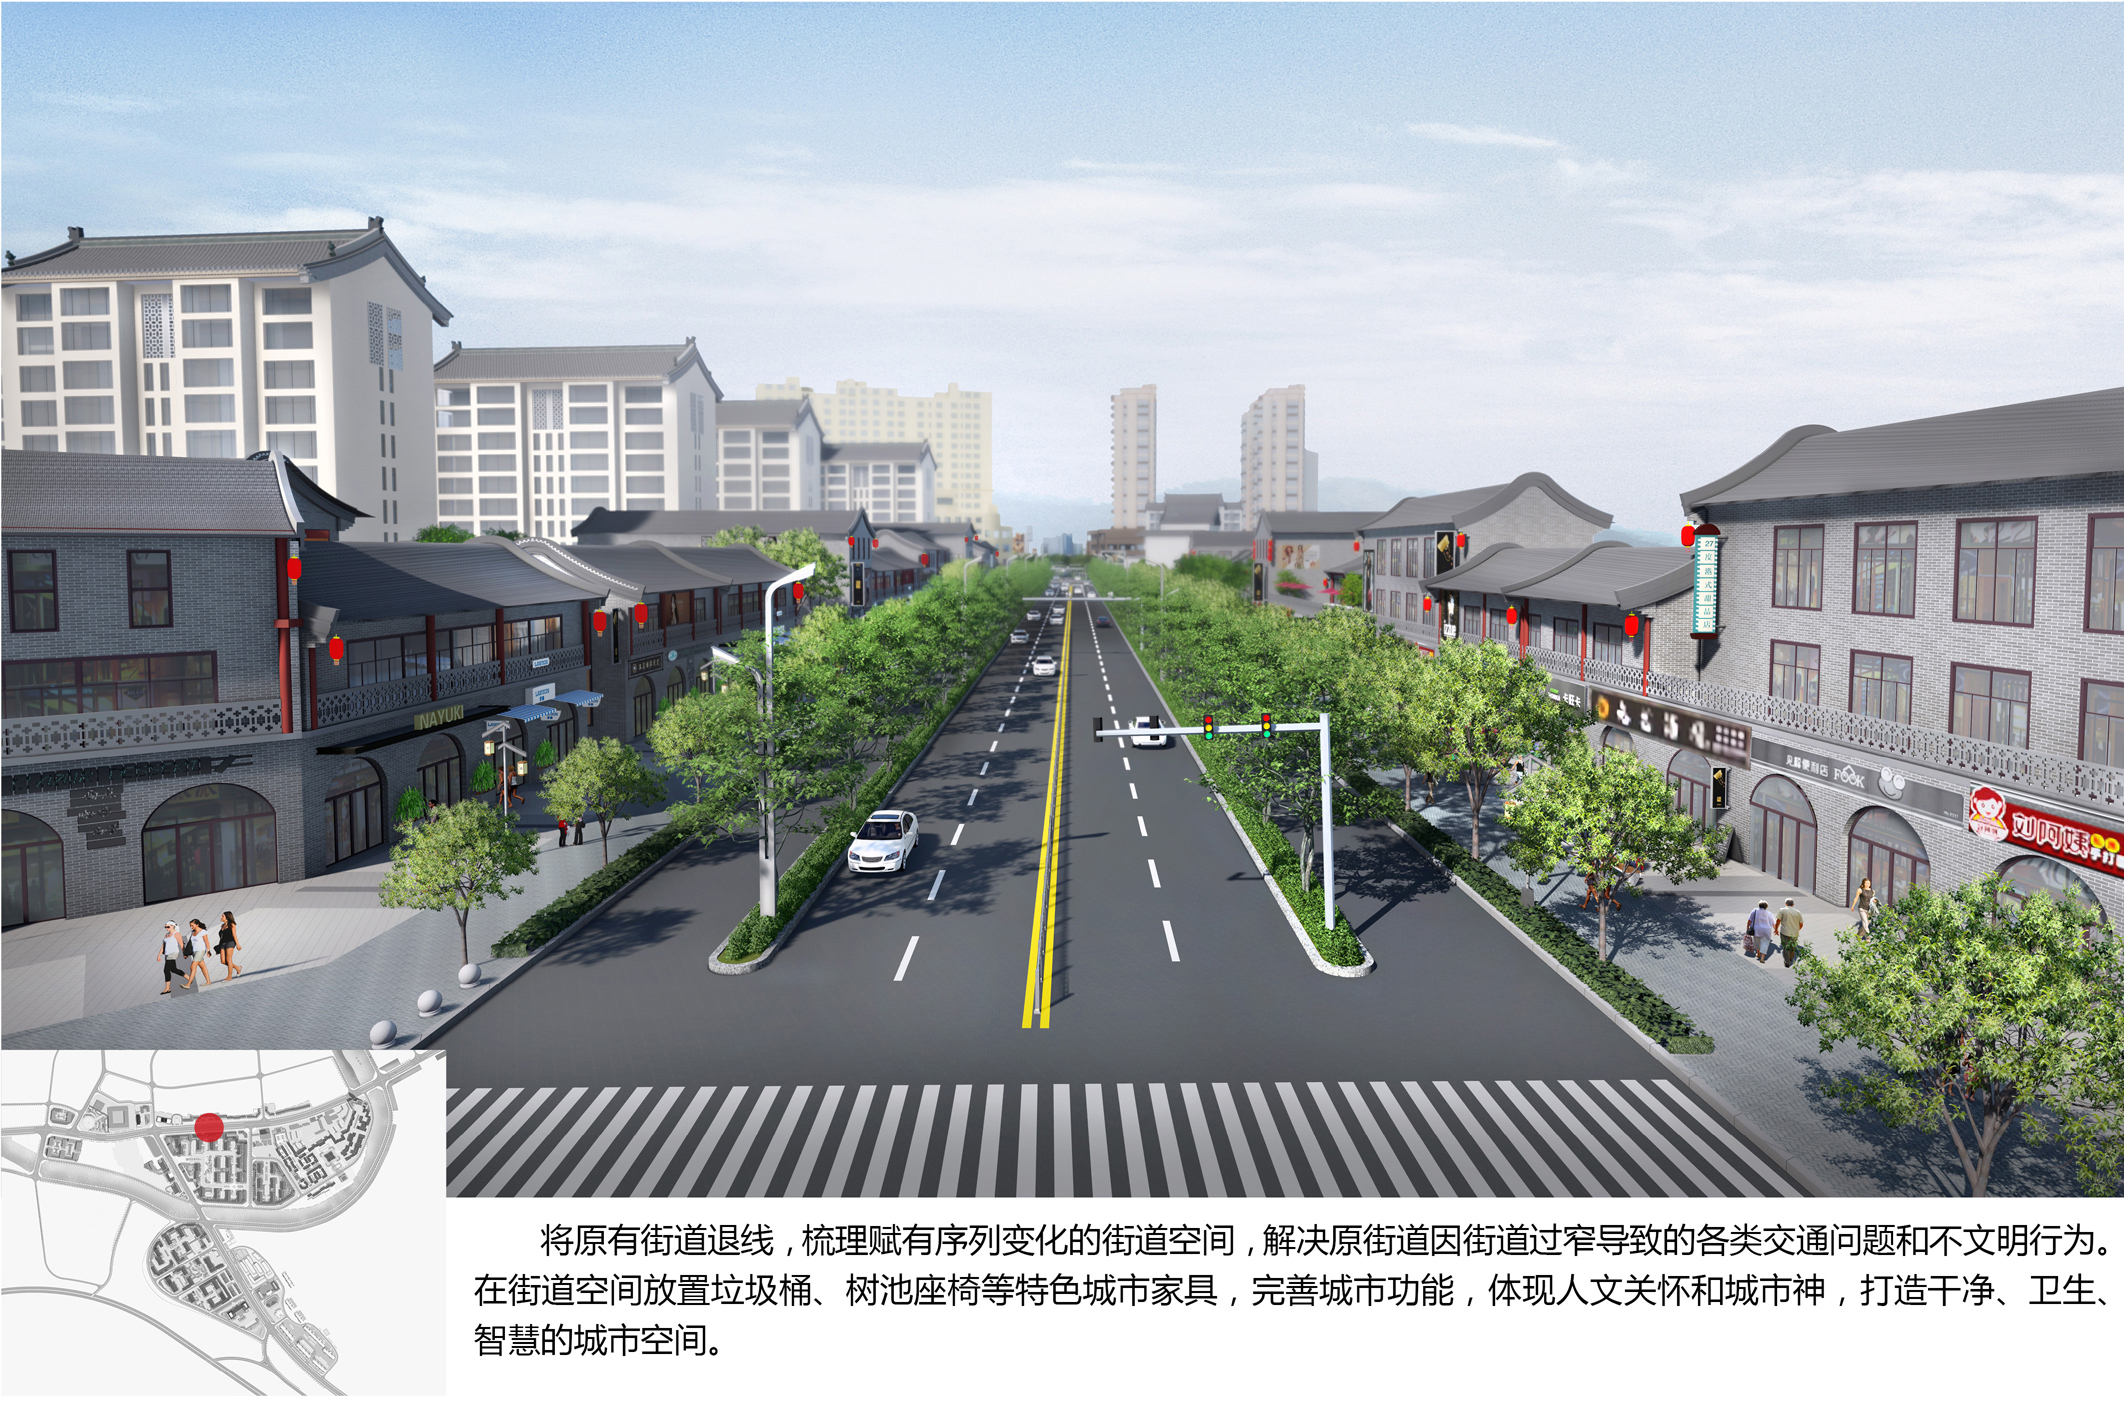 历史文化街区改造提升——吉县新华街历史文化街区改造